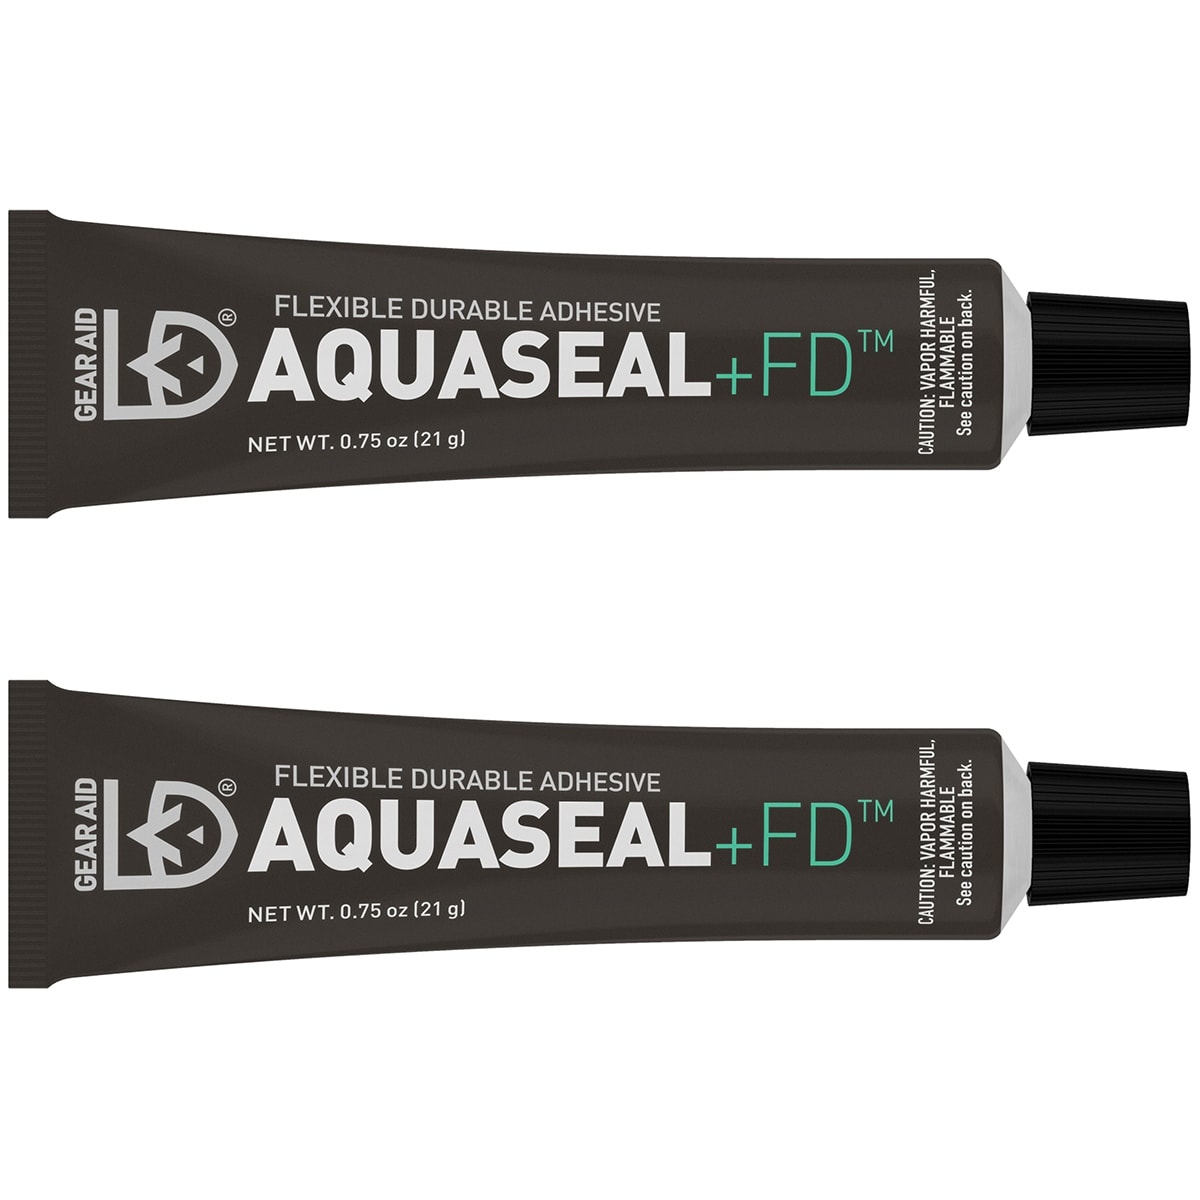 Aquaseal FD Repair Adhesive 7g (2pack)